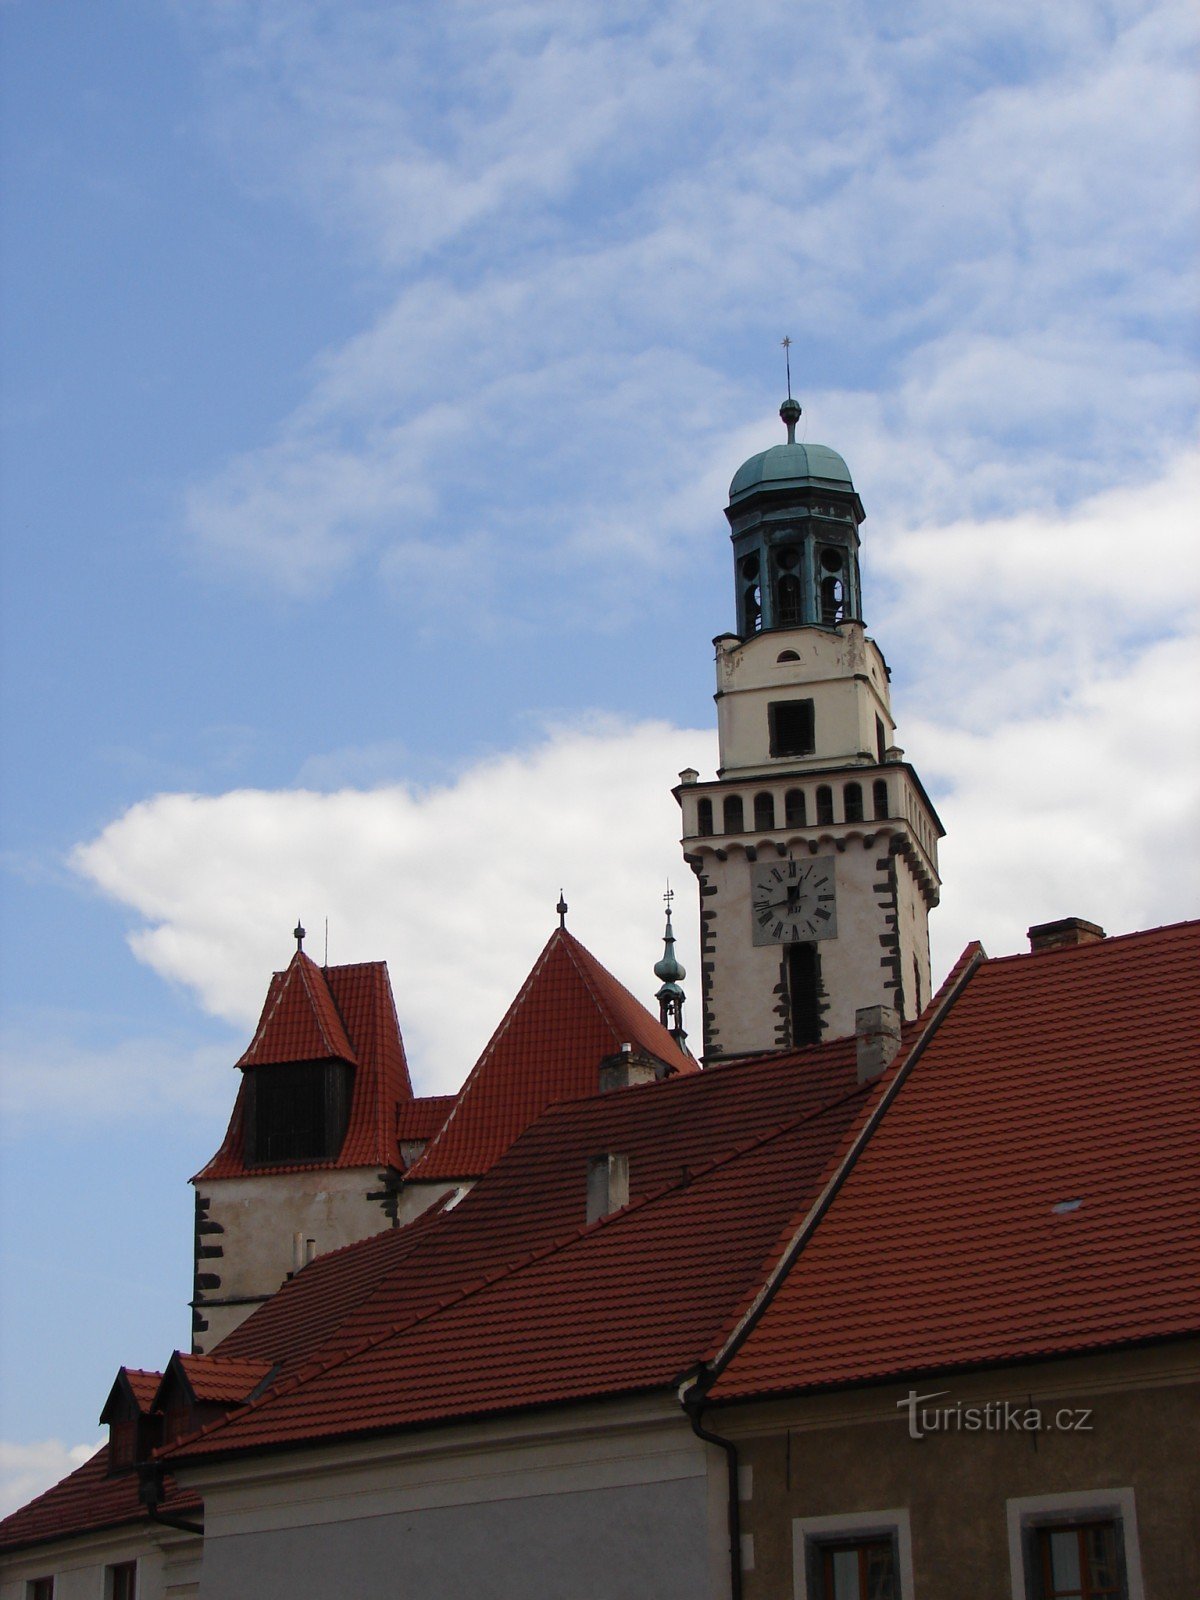 Visita la iglesia de St. Jakub en Prachatice, donde el santo patrón de los mercaderes y peregrinos